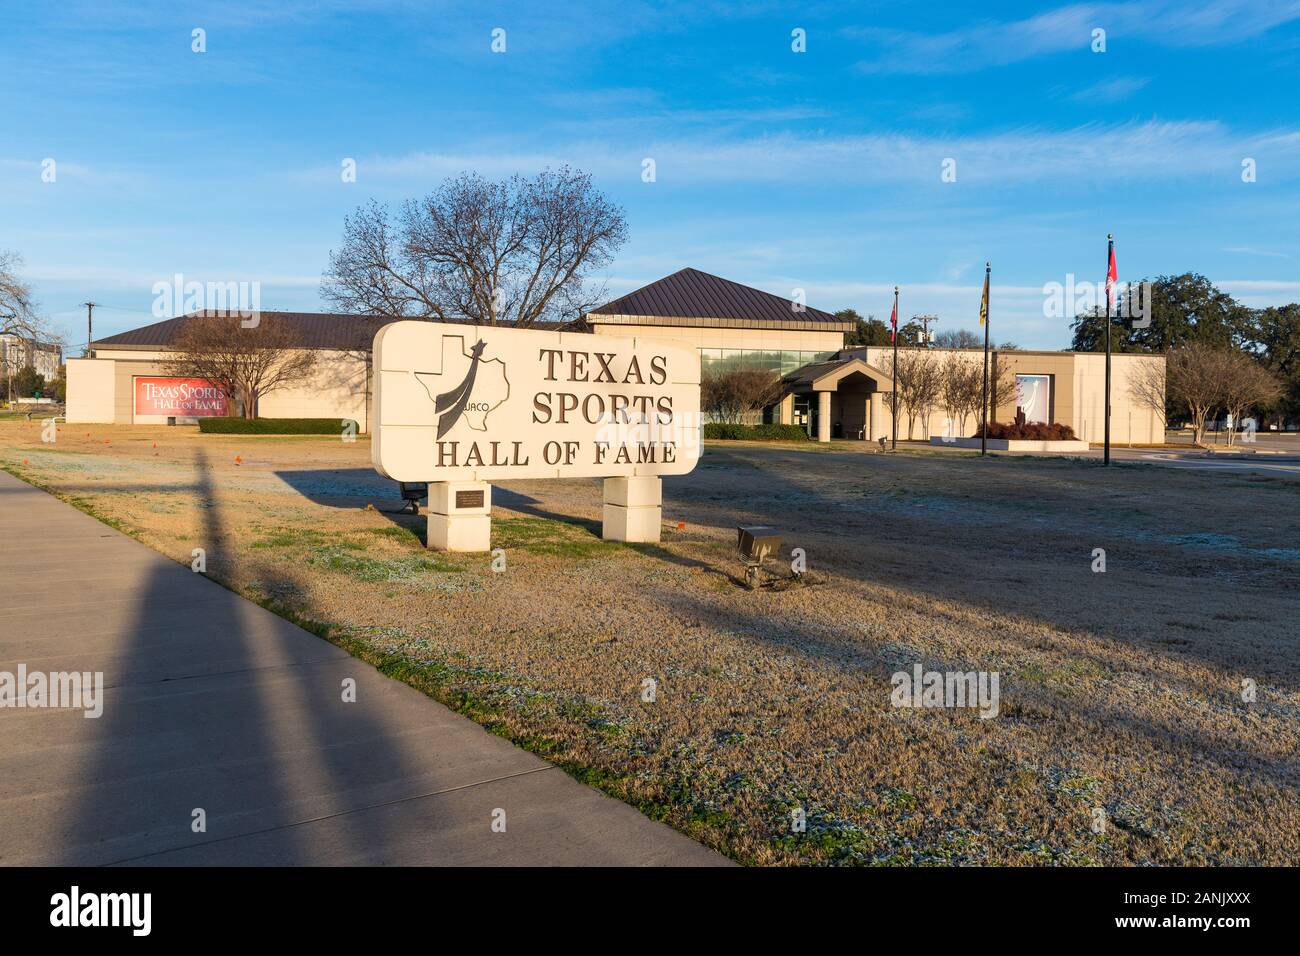 Waco, Texas / USA - 12 janvier 2020 : le Temple de la renommée du Sport du Texas à Waco, Texas Banque D'Images